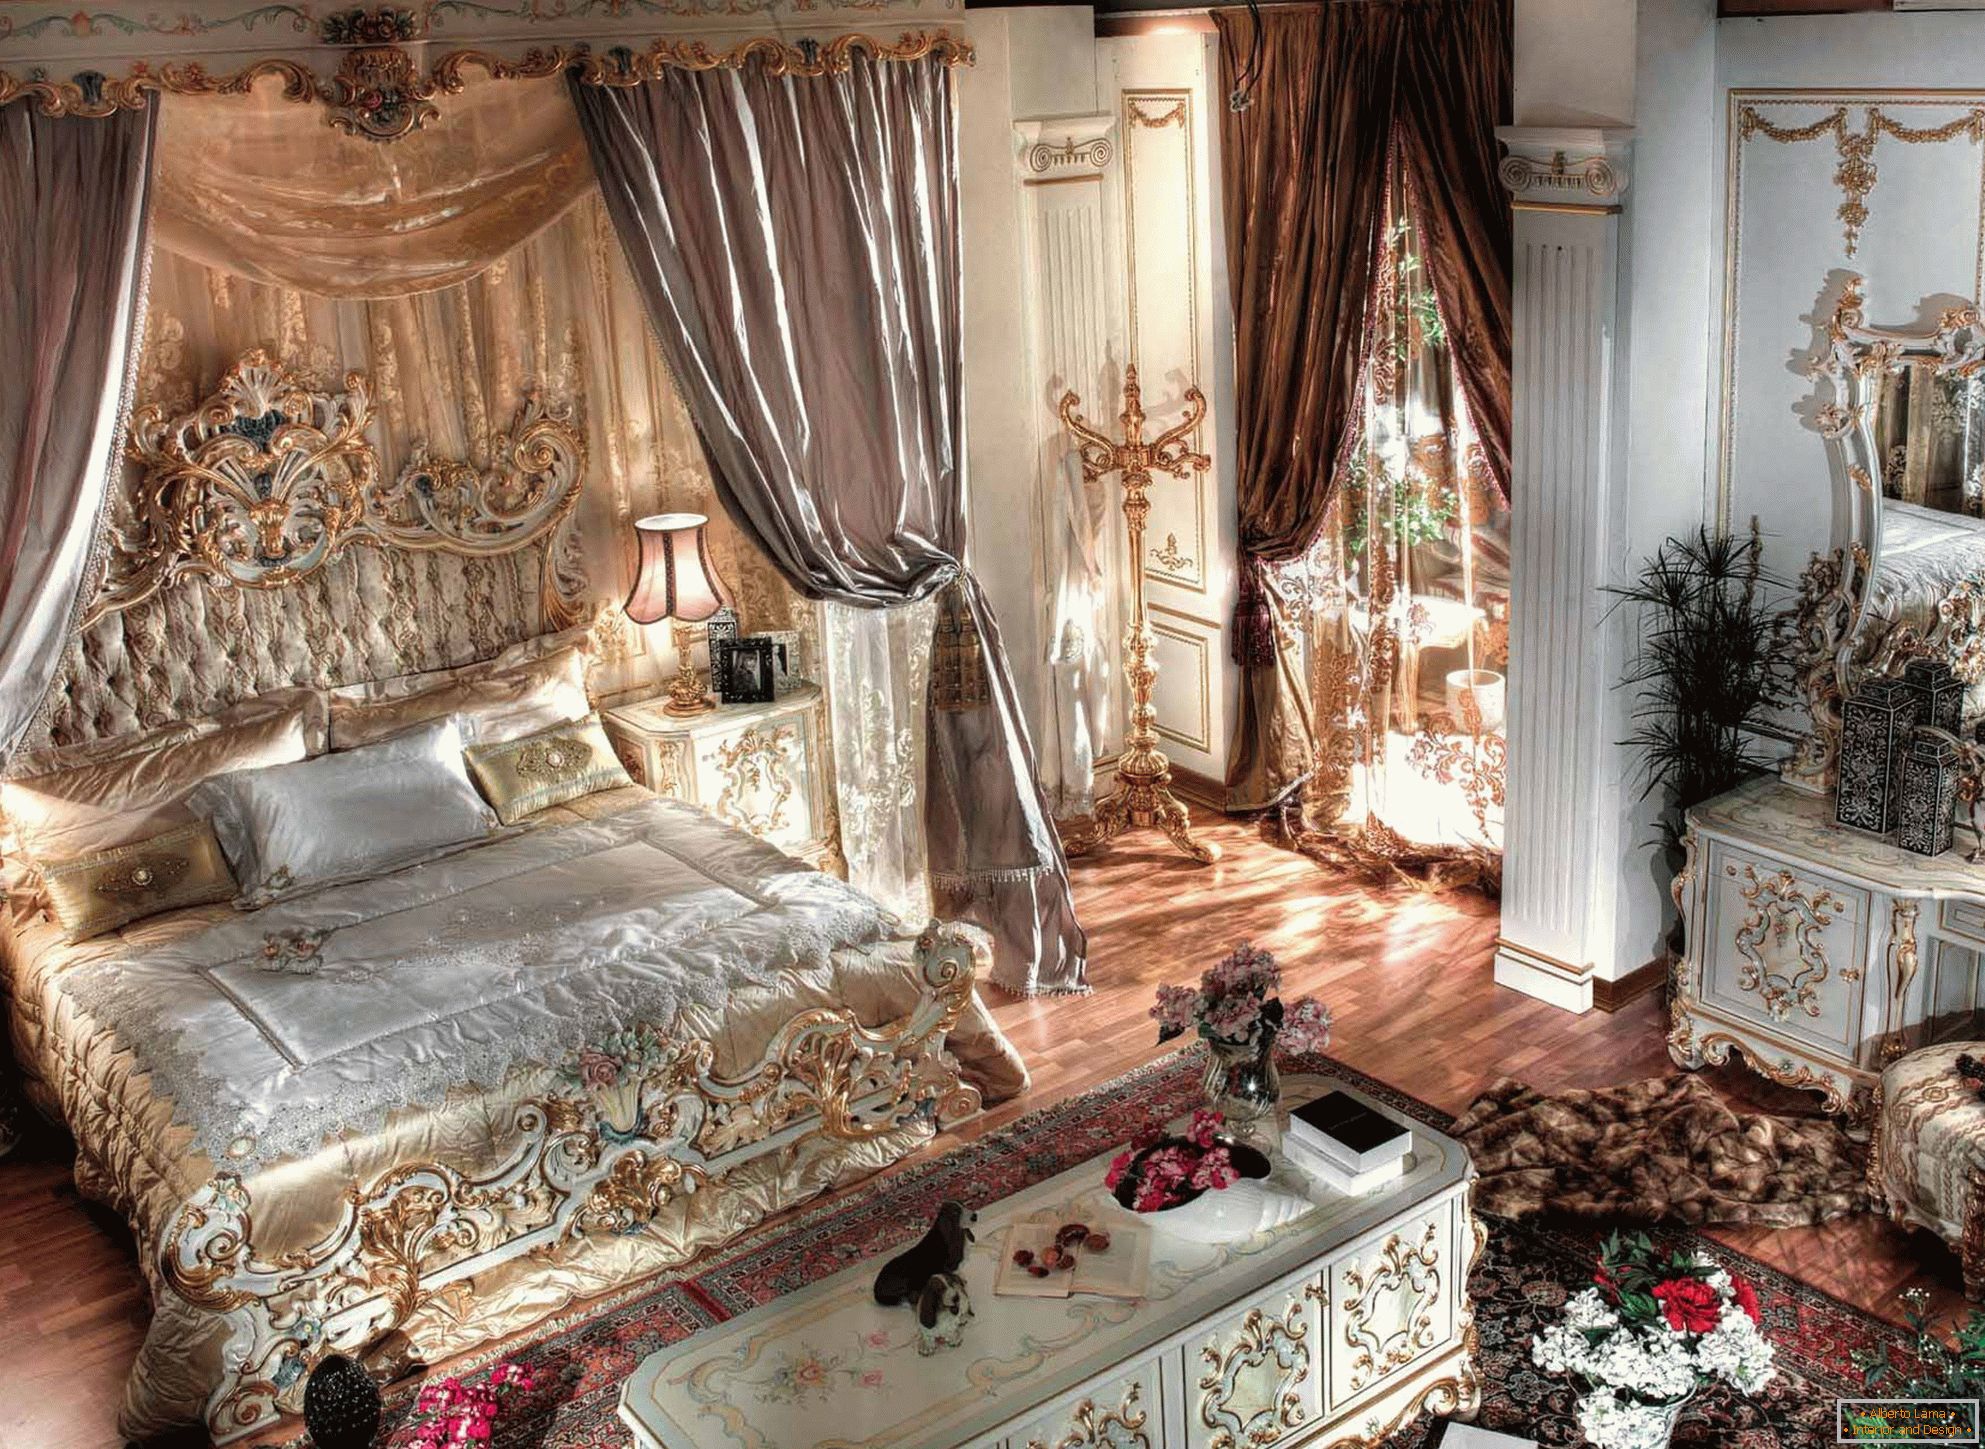 Luxusná baroková spálňa s vysokými stropmi. V strede kompozície je masívne lôžko z dreva s vyrezávanými chrbtami.